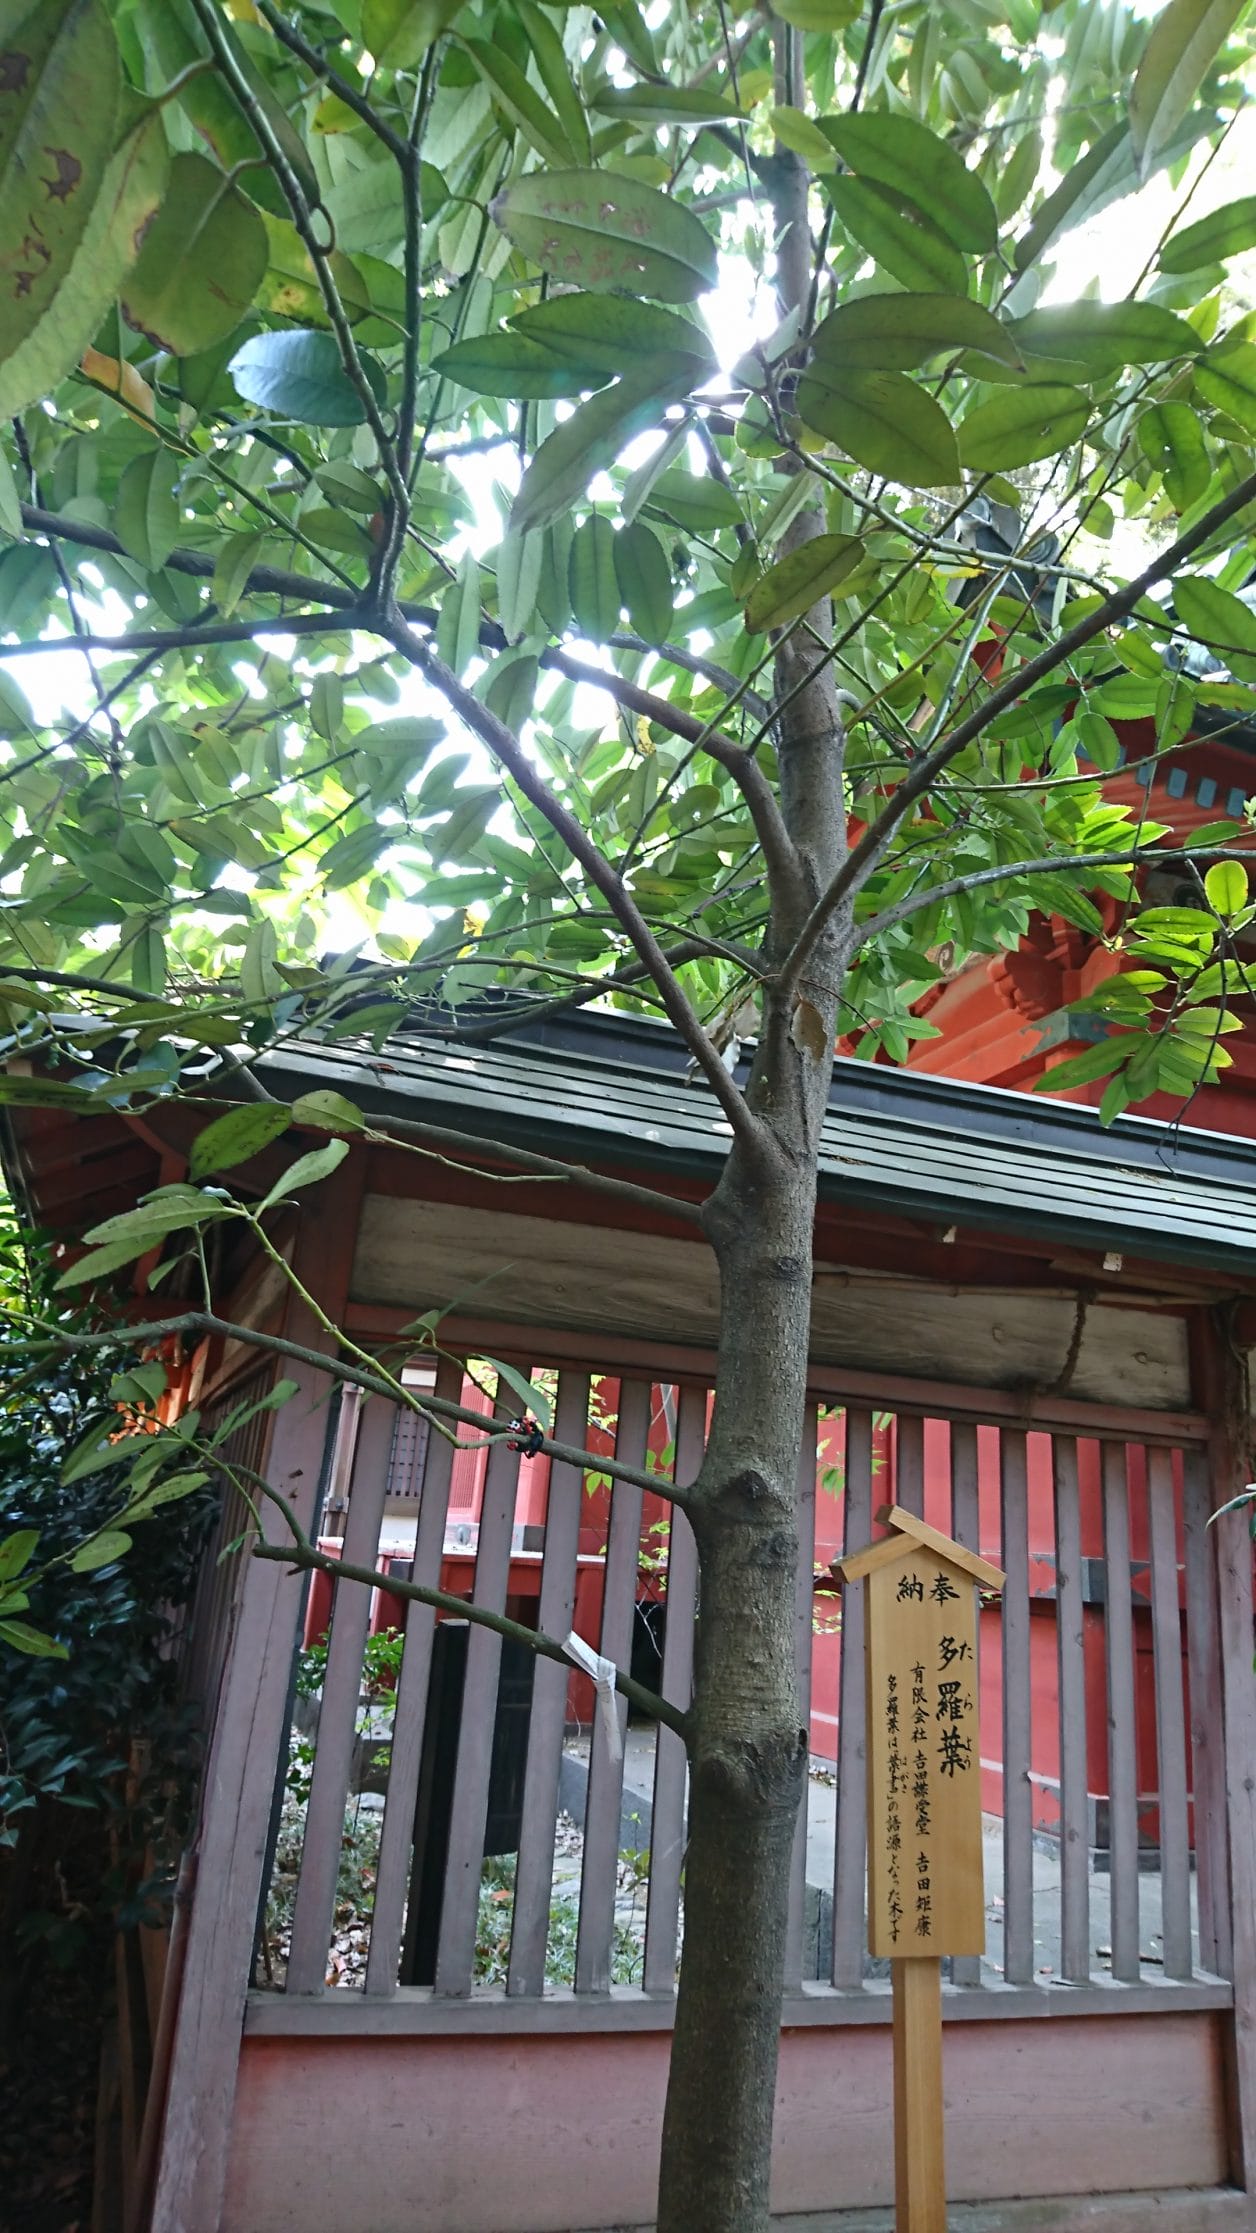 川越氷川神社にある葉書の名前の語源になったと言われる多羅葉の木